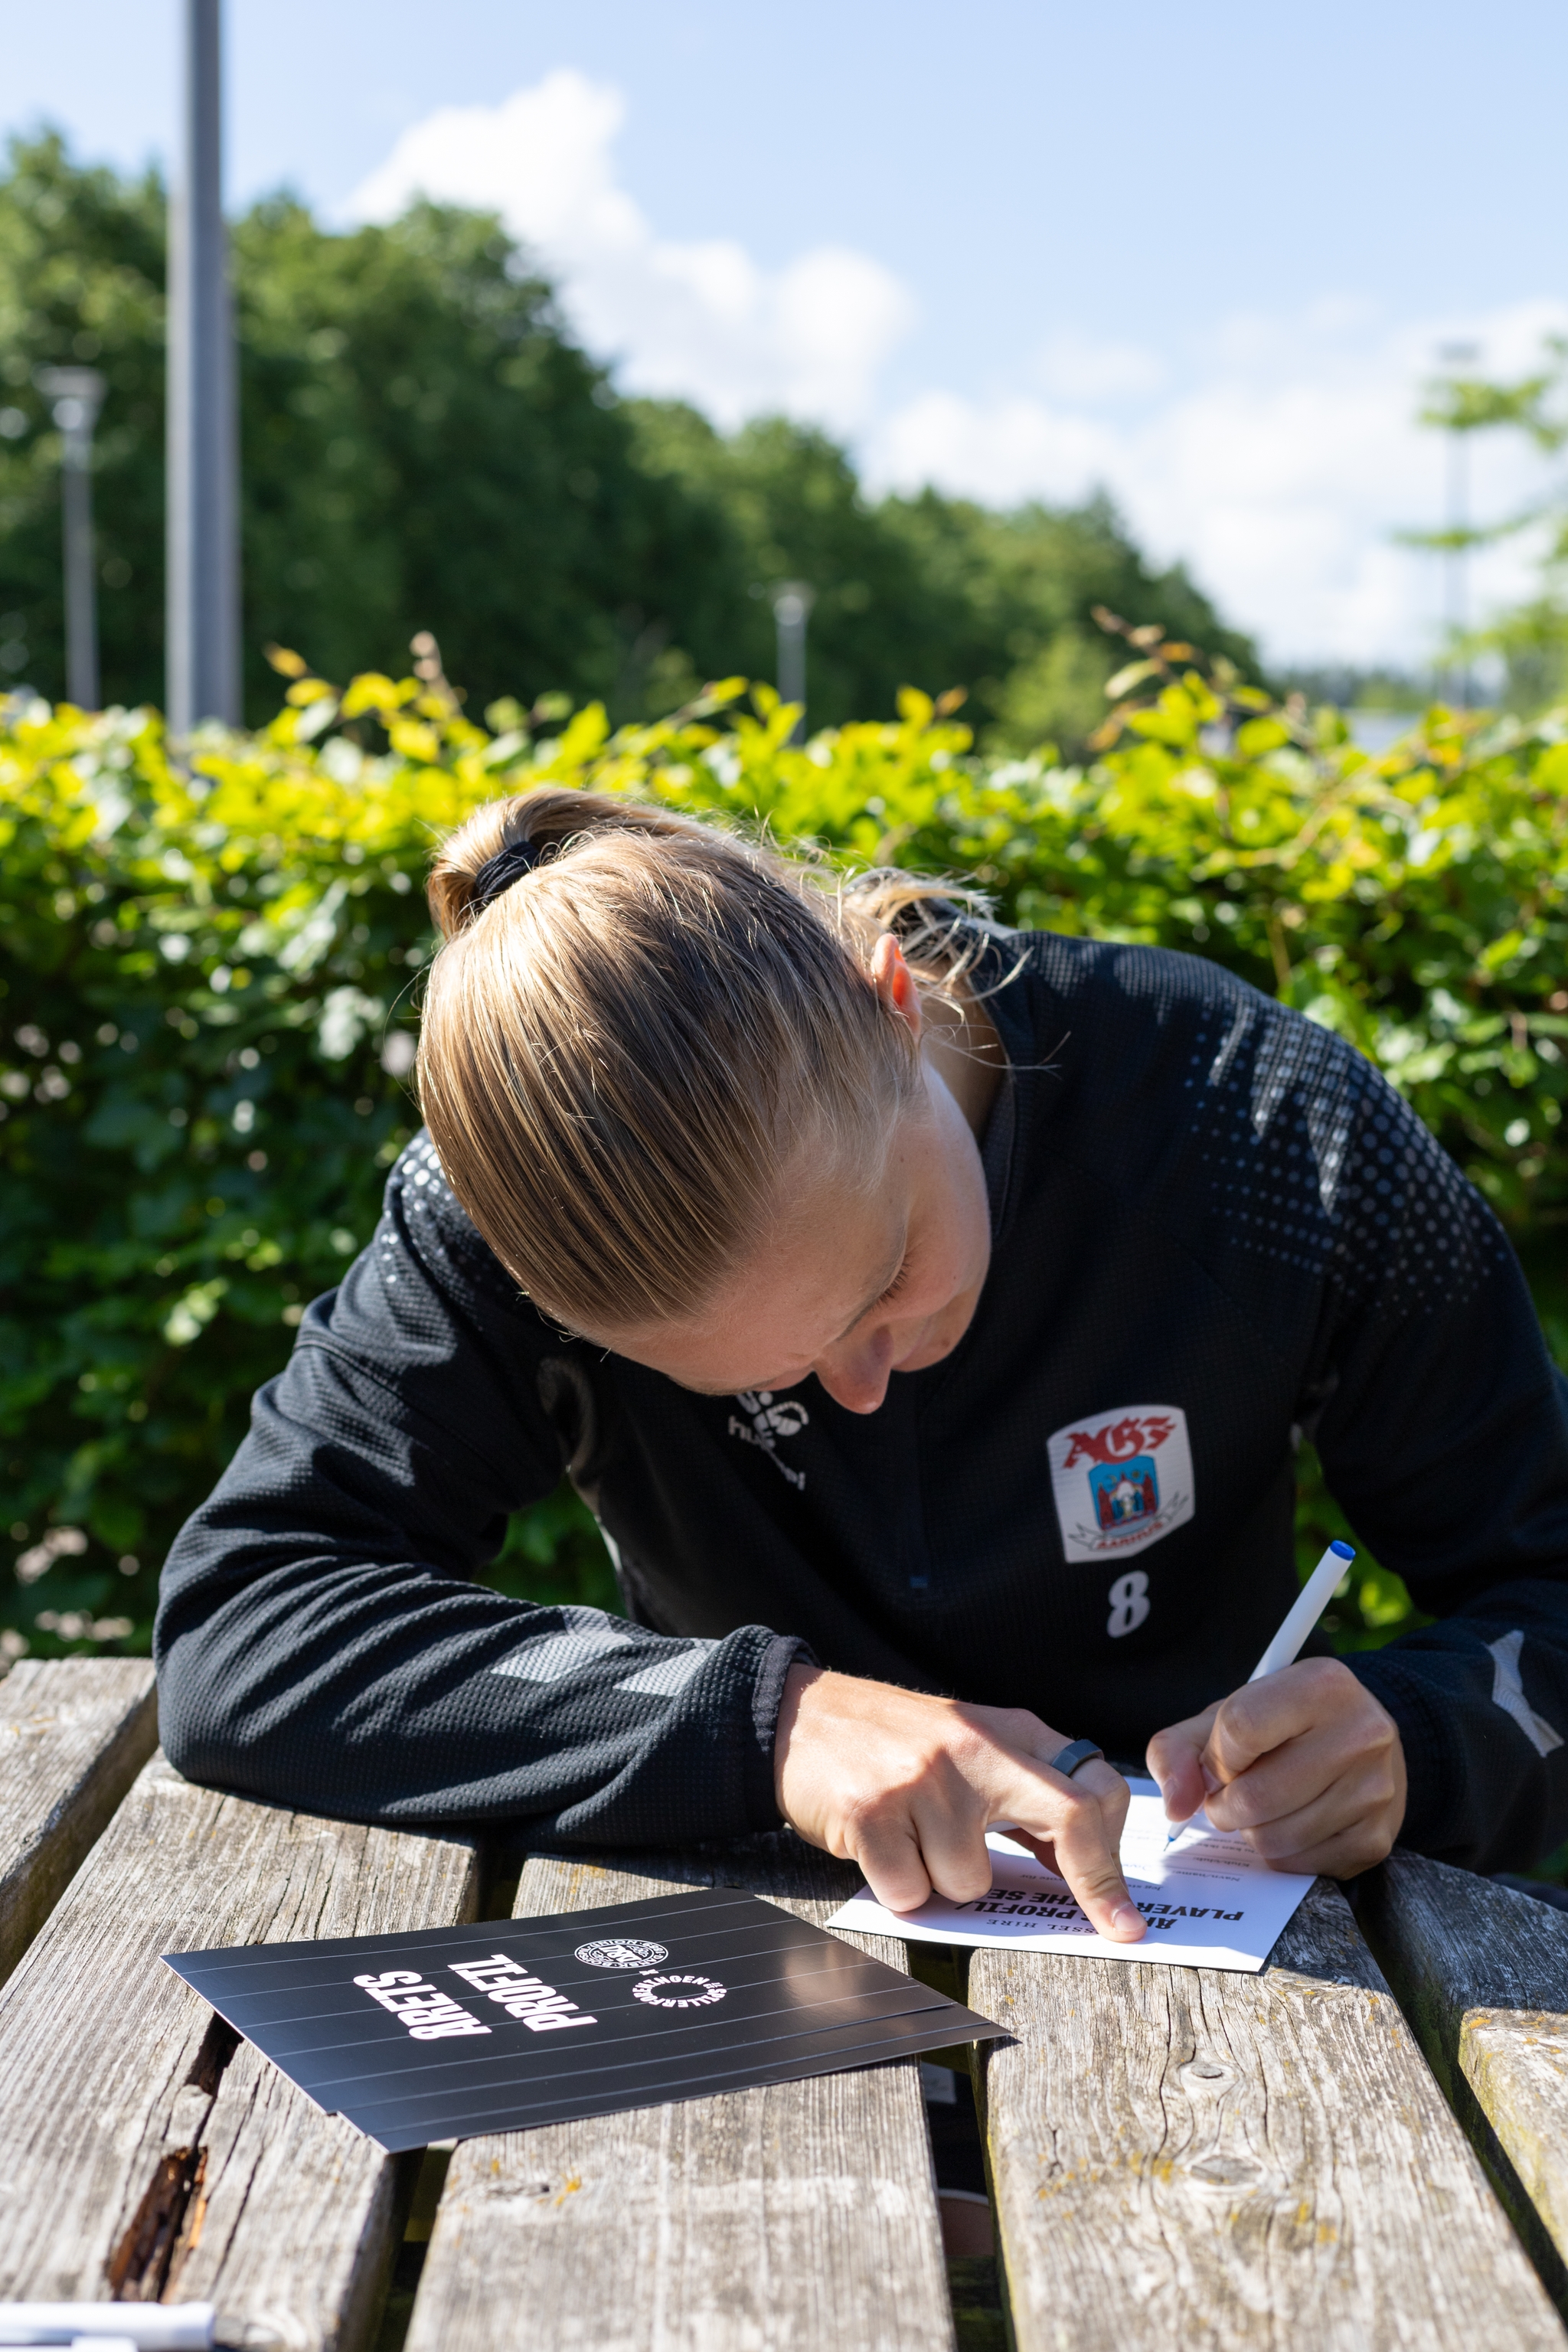 Spillerforeningen har de seneste uger besøgt alle seks klubber i mesterskabspillet i Gjensidige Kvindeliga. På billedet ses Sarah Dyrehauge afgive sin stemme.